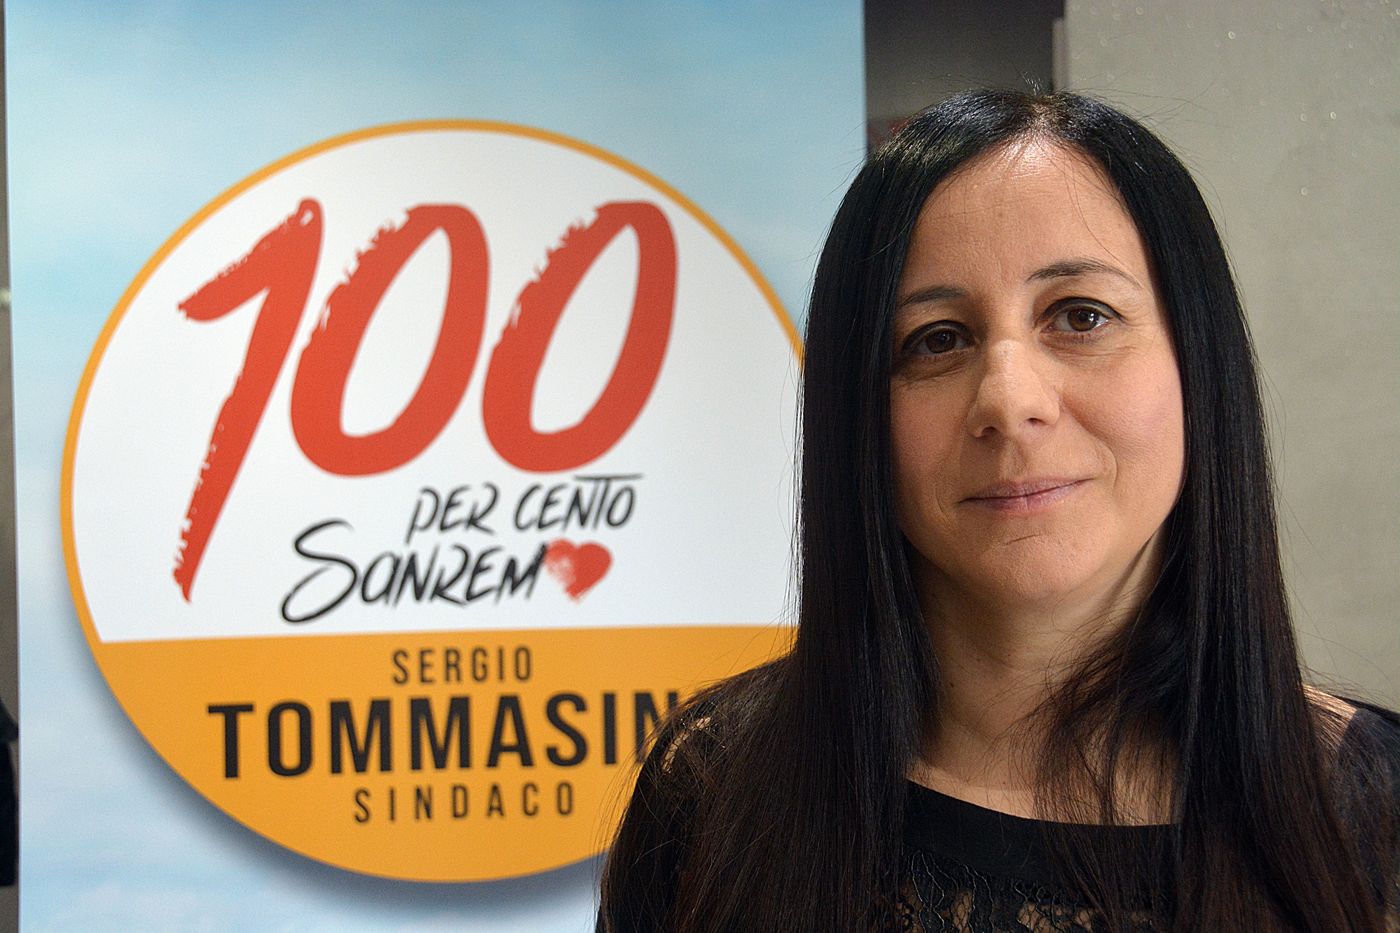 Angela Marano striscione candidata 100 x 100 Sanremo Tommassini_06